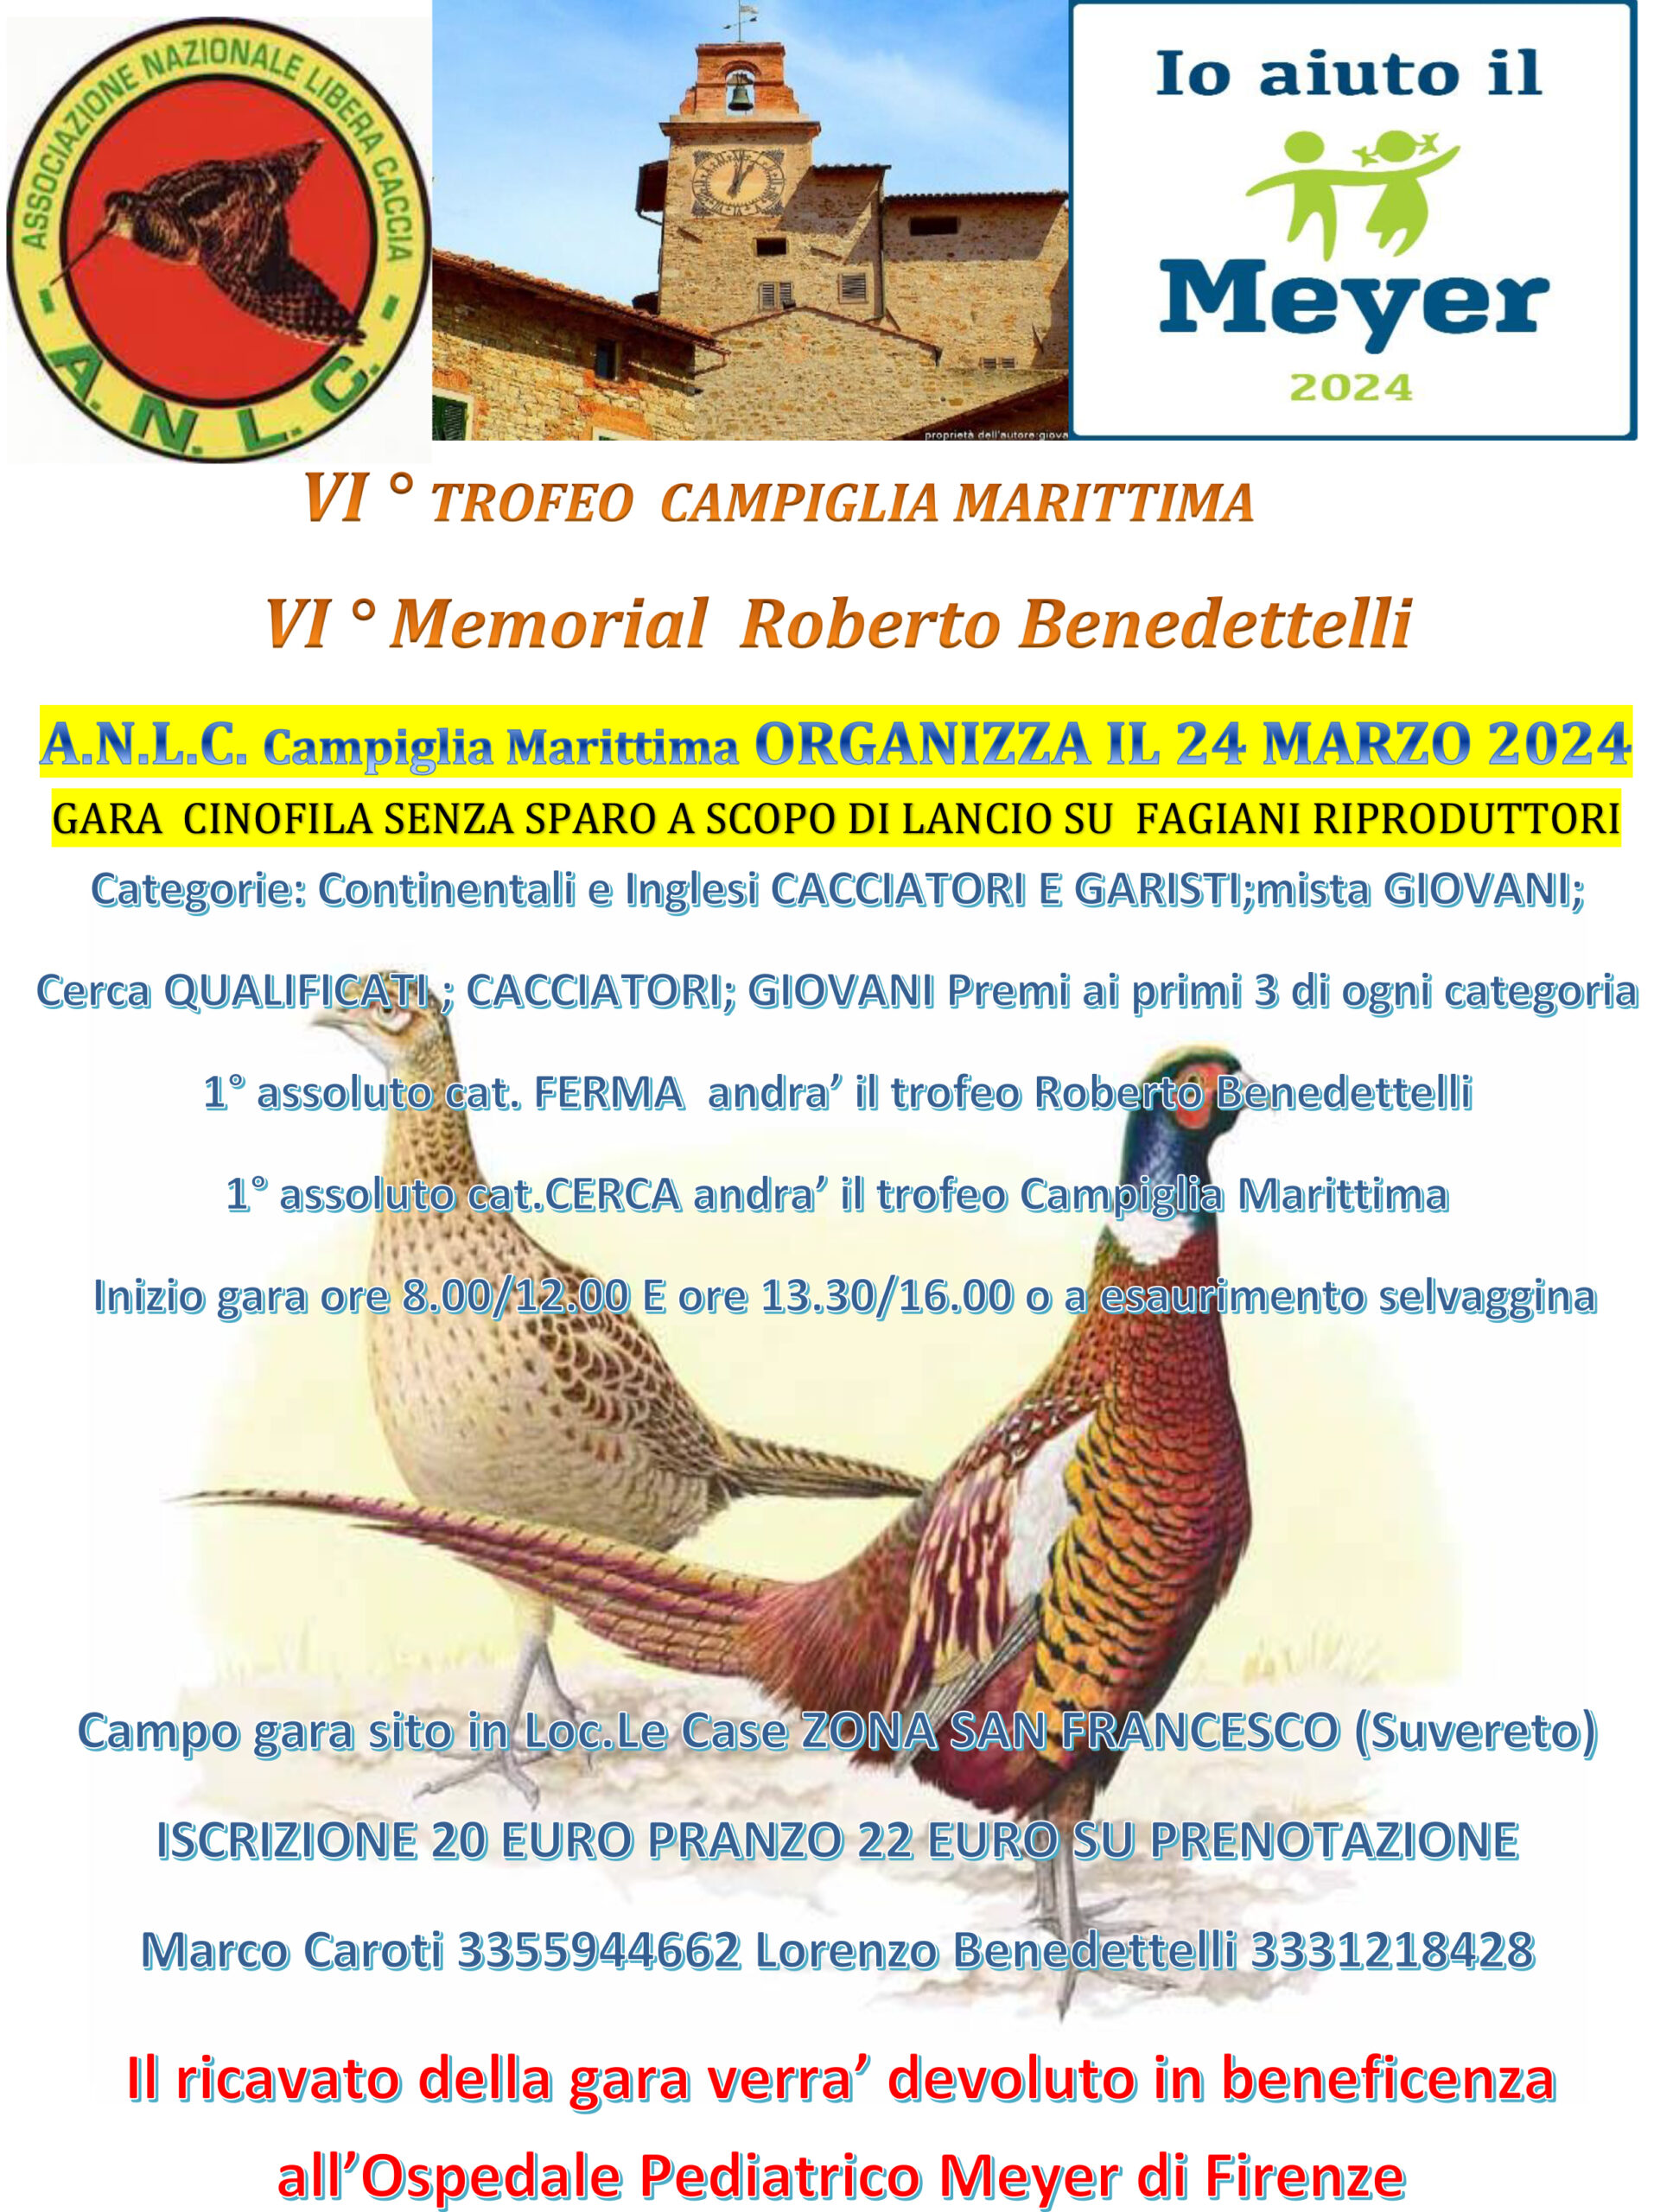 VI° Trofeo Campiglia Marittima e Memorial Roberto Benedettelli